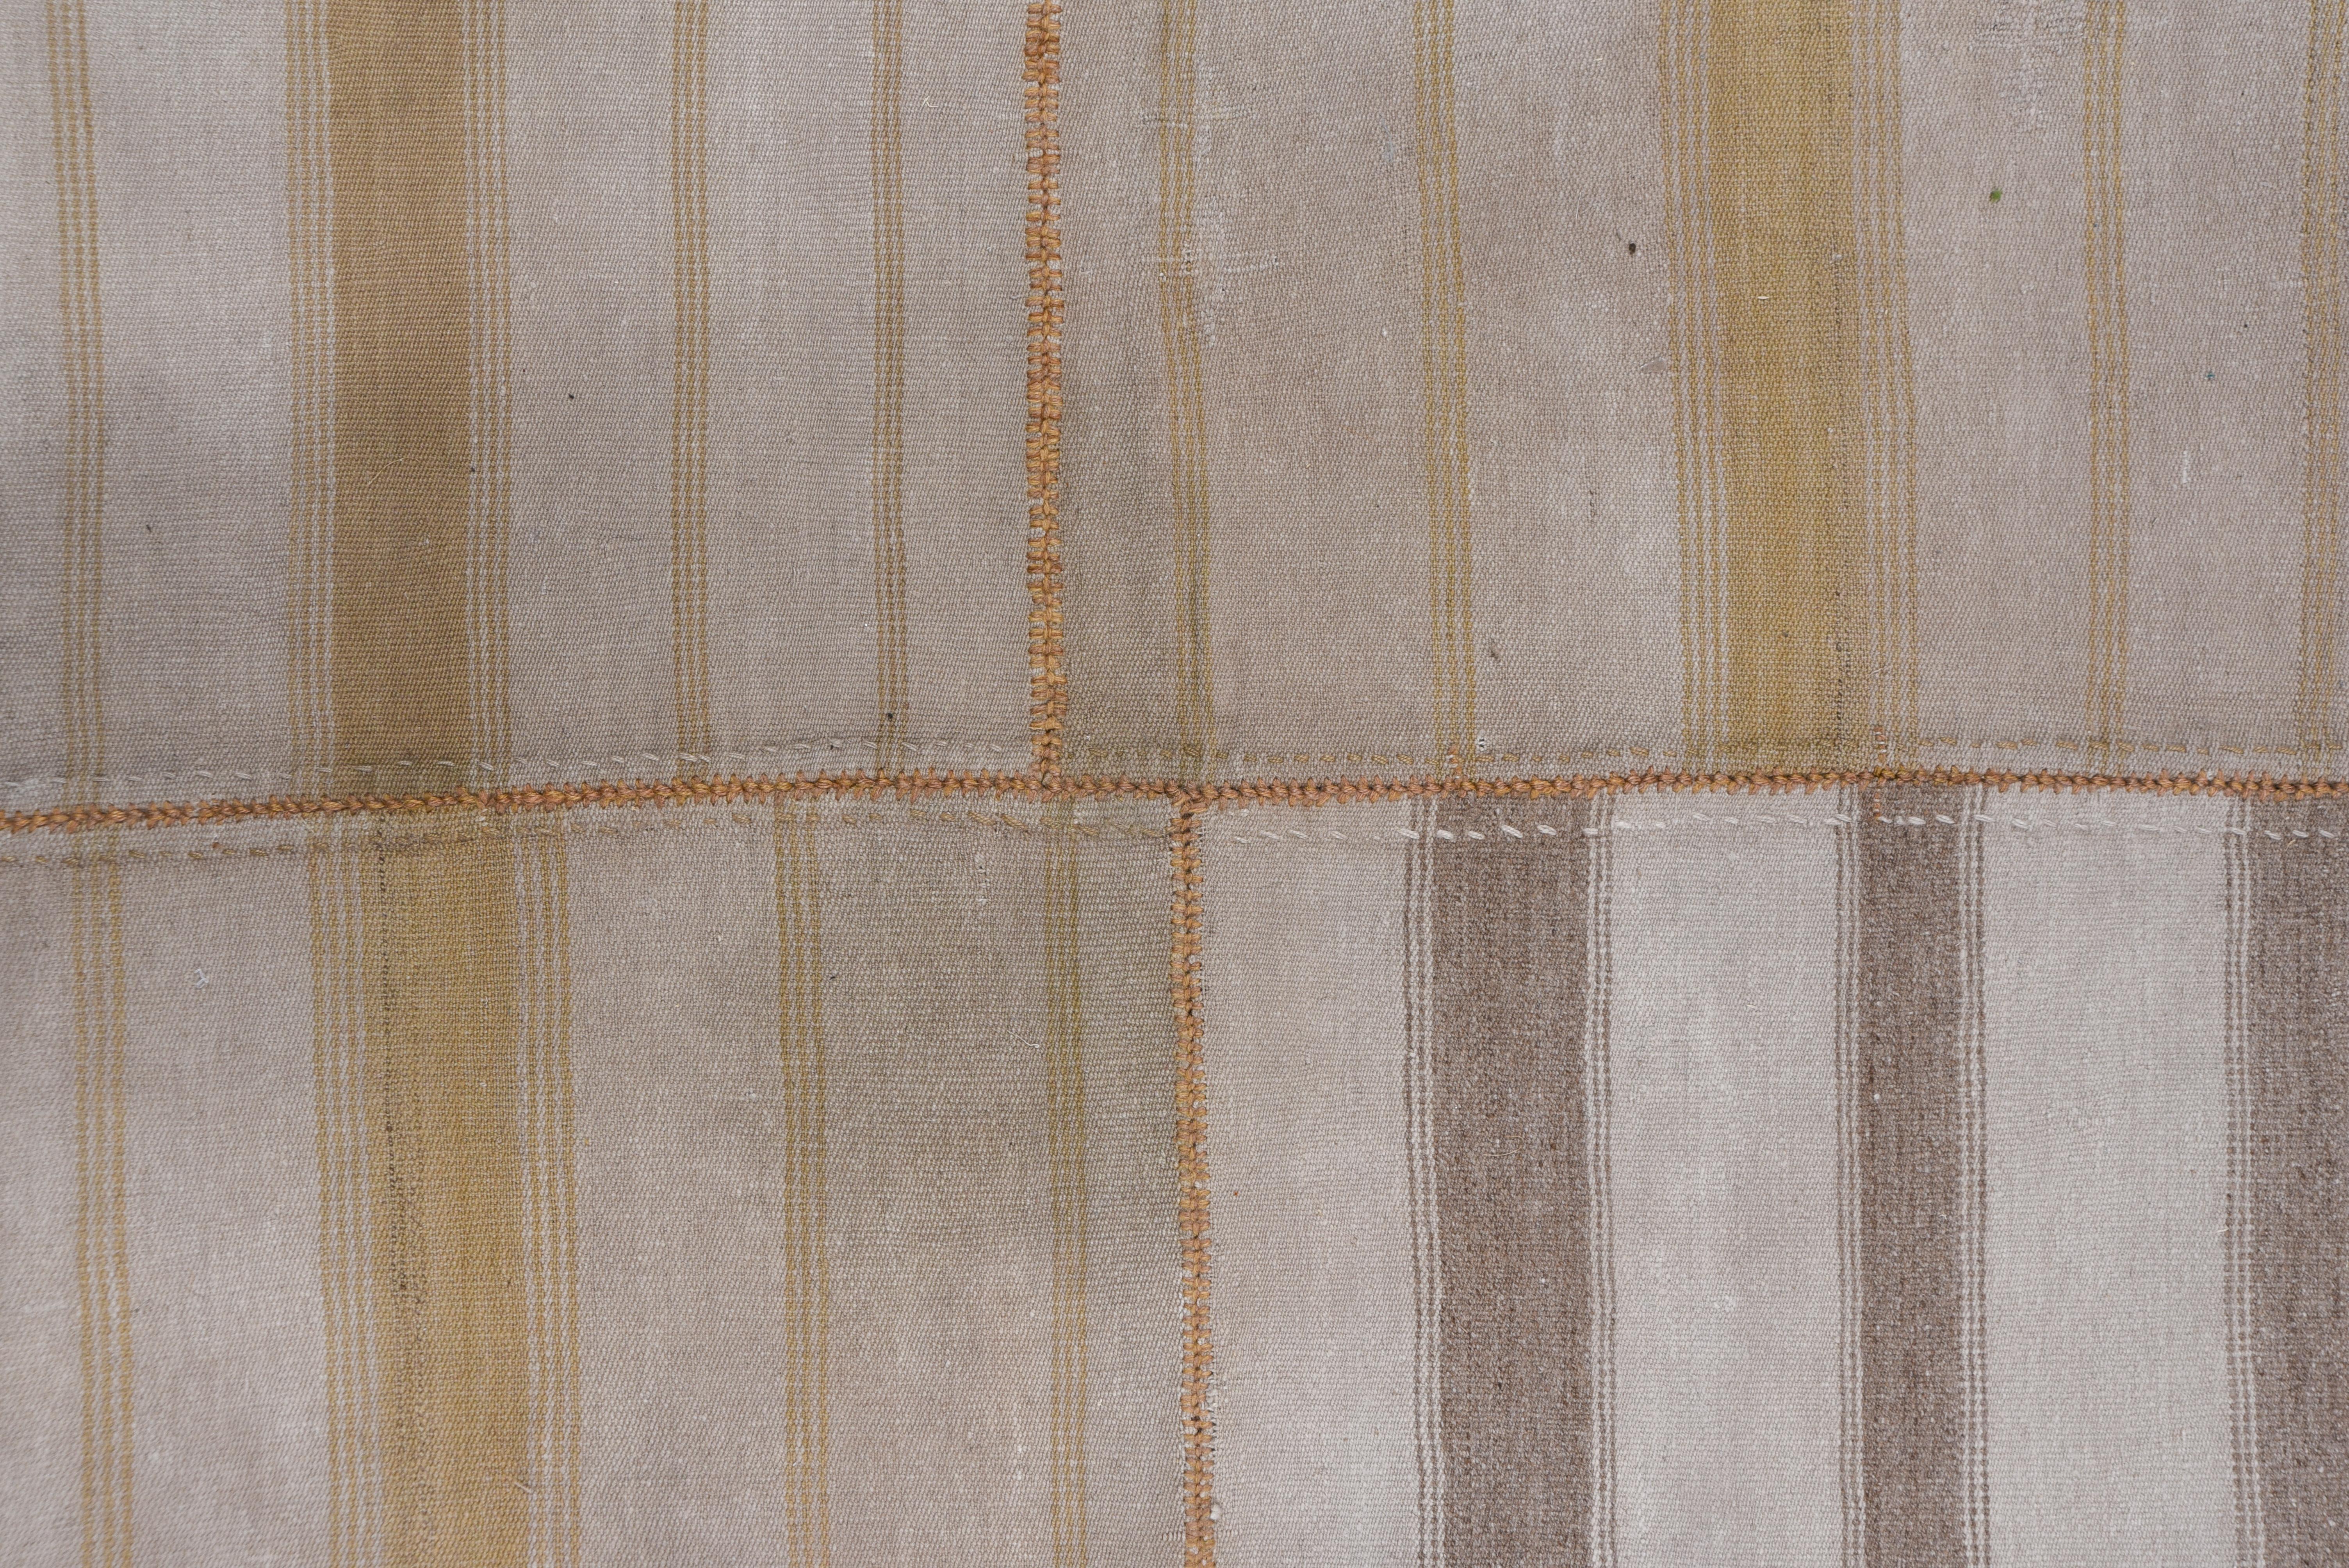 Hand-Woven 1940s Rustic Turkish Broken Stripe Flatweave Rug, Neutral Tones For Sale